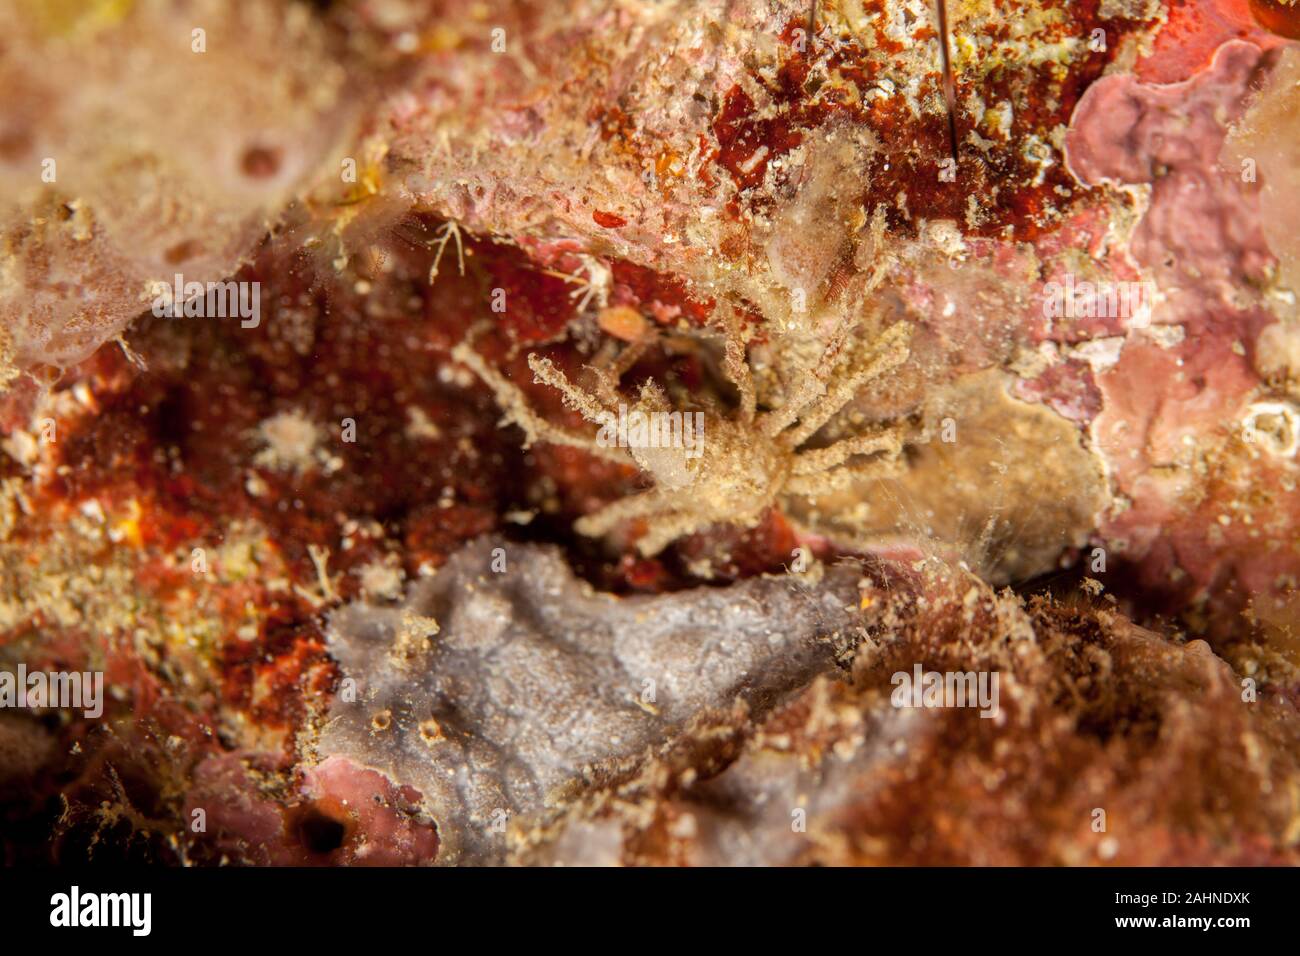 Majoidea, Spider crab Stock Photo